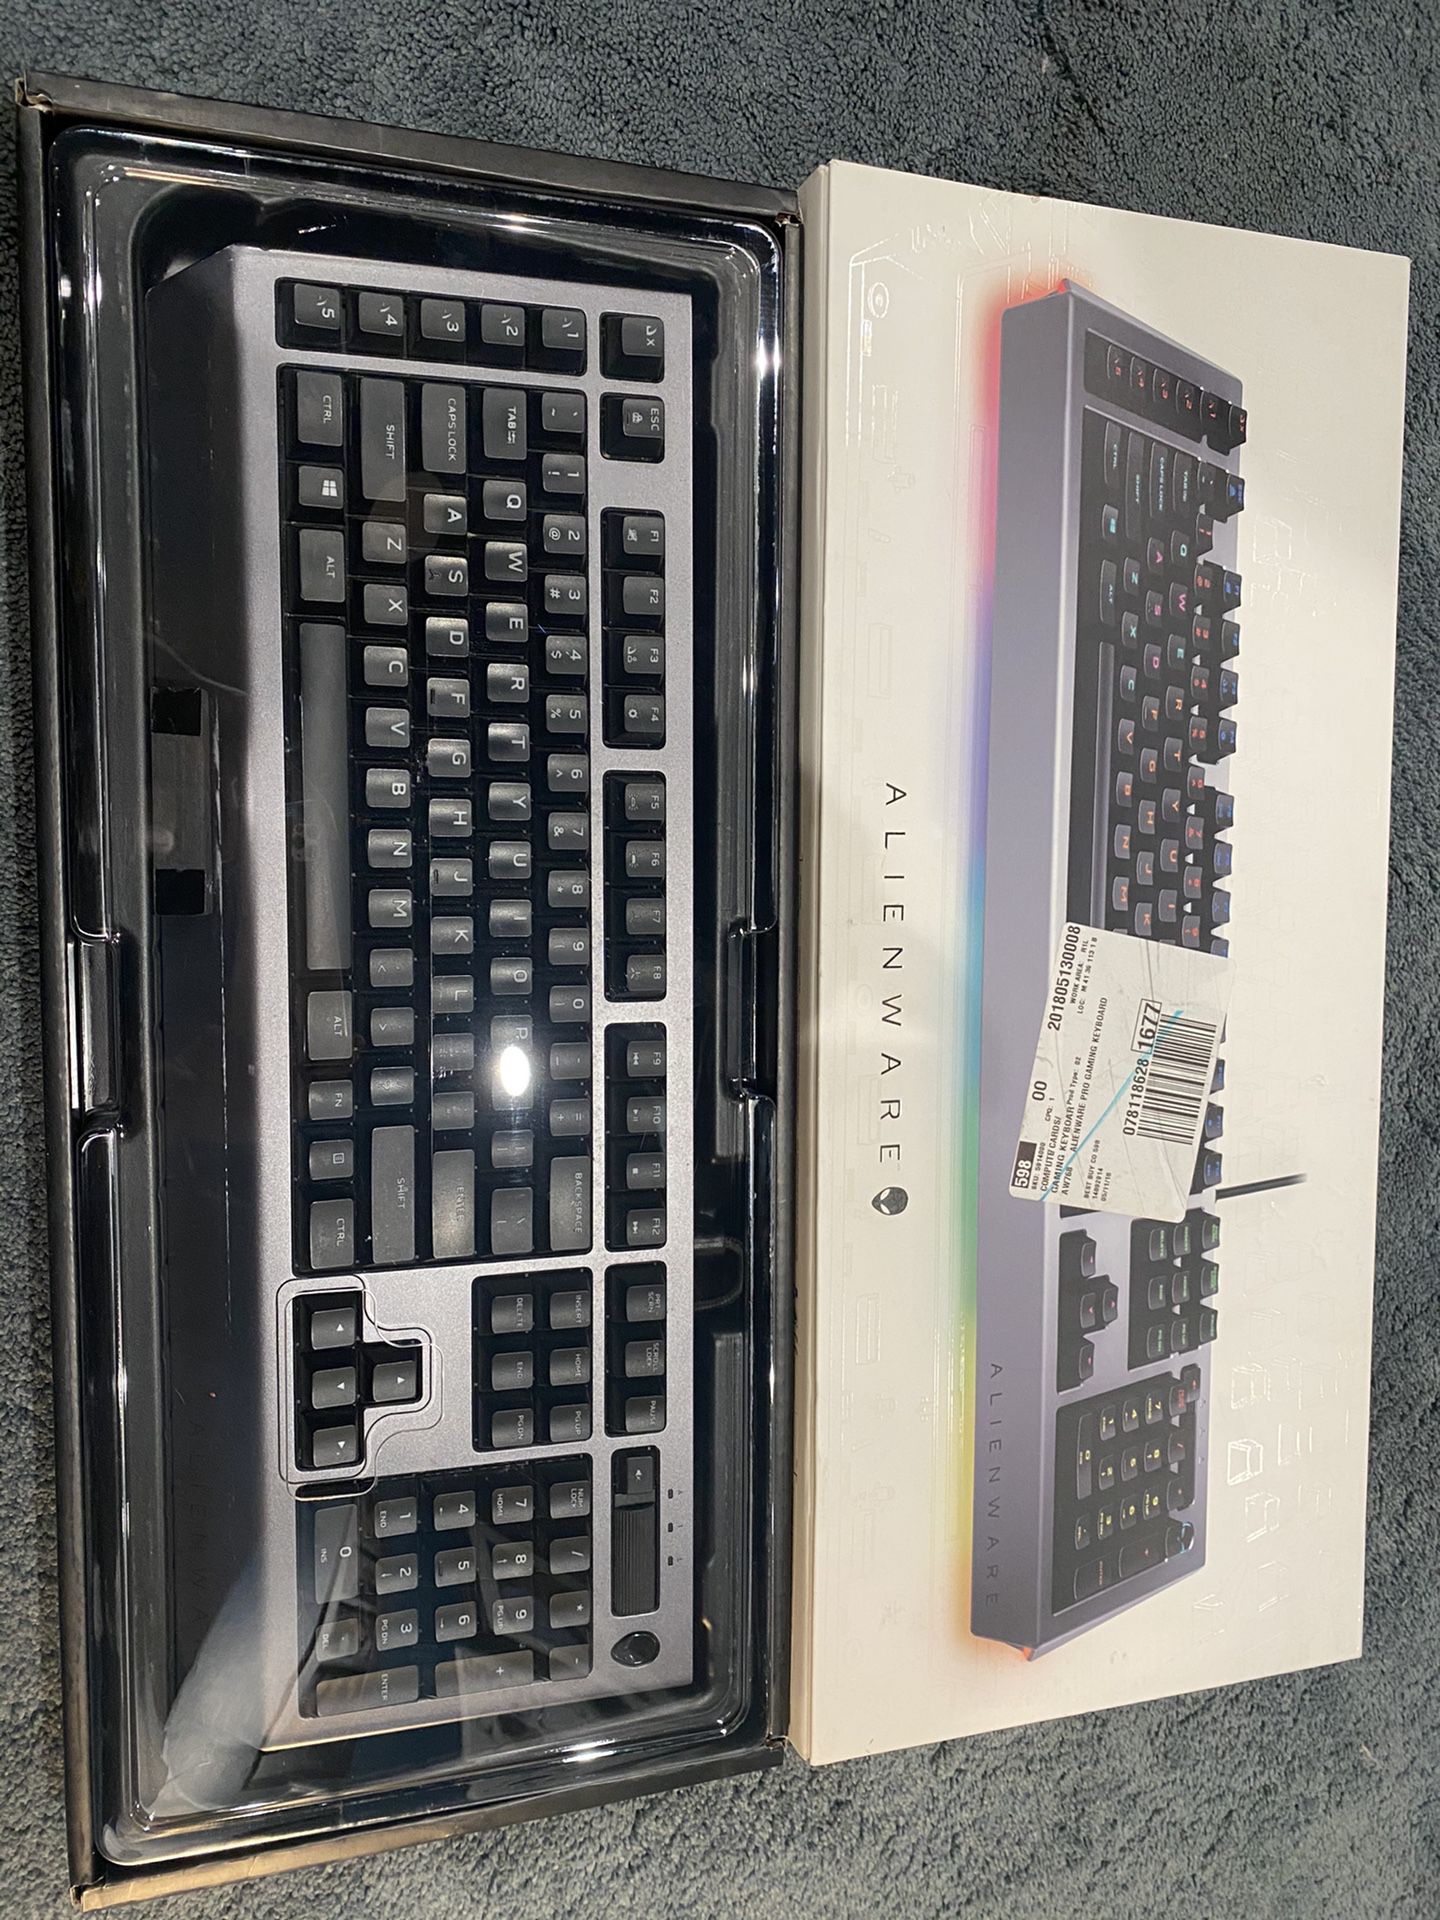 Alienware Aw768 Keyboard